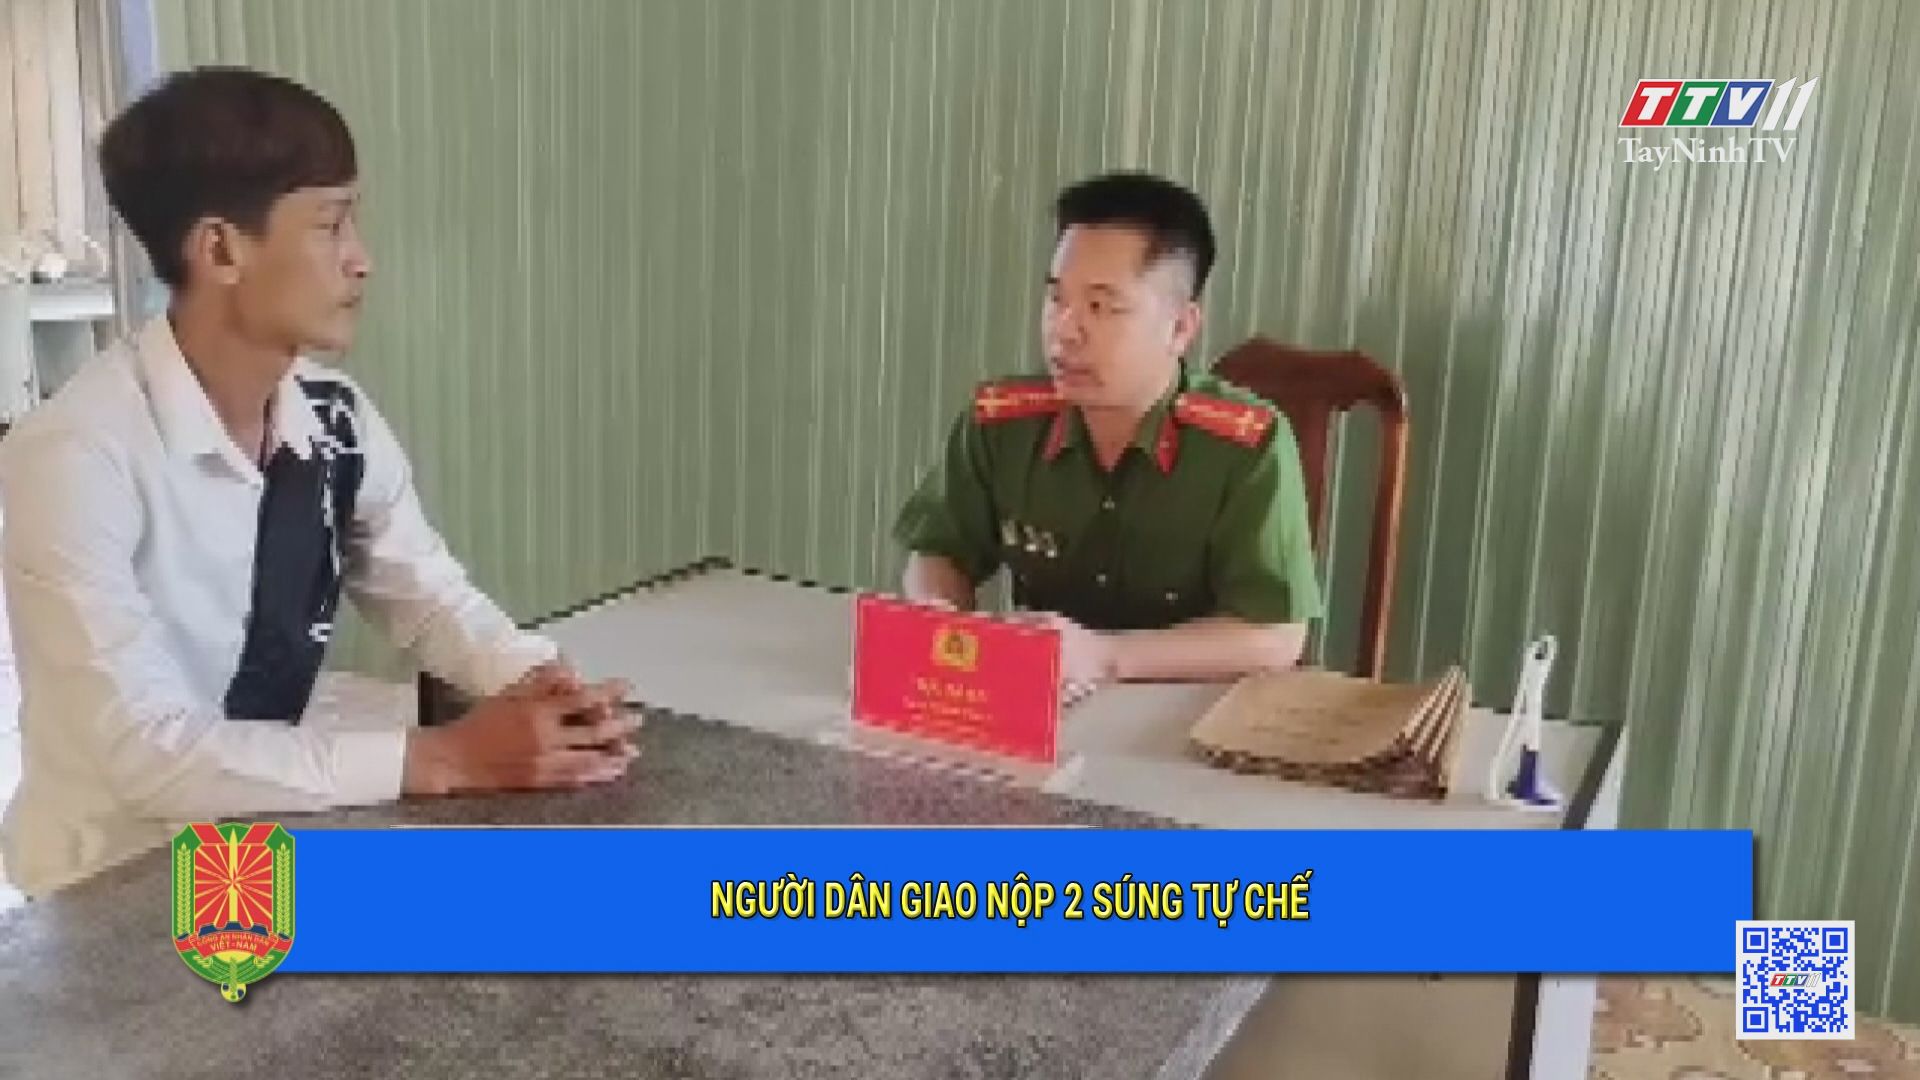 Người dân giao nộp 2 súng tự chế | An ninh Tây Ninh | TayNinhTV